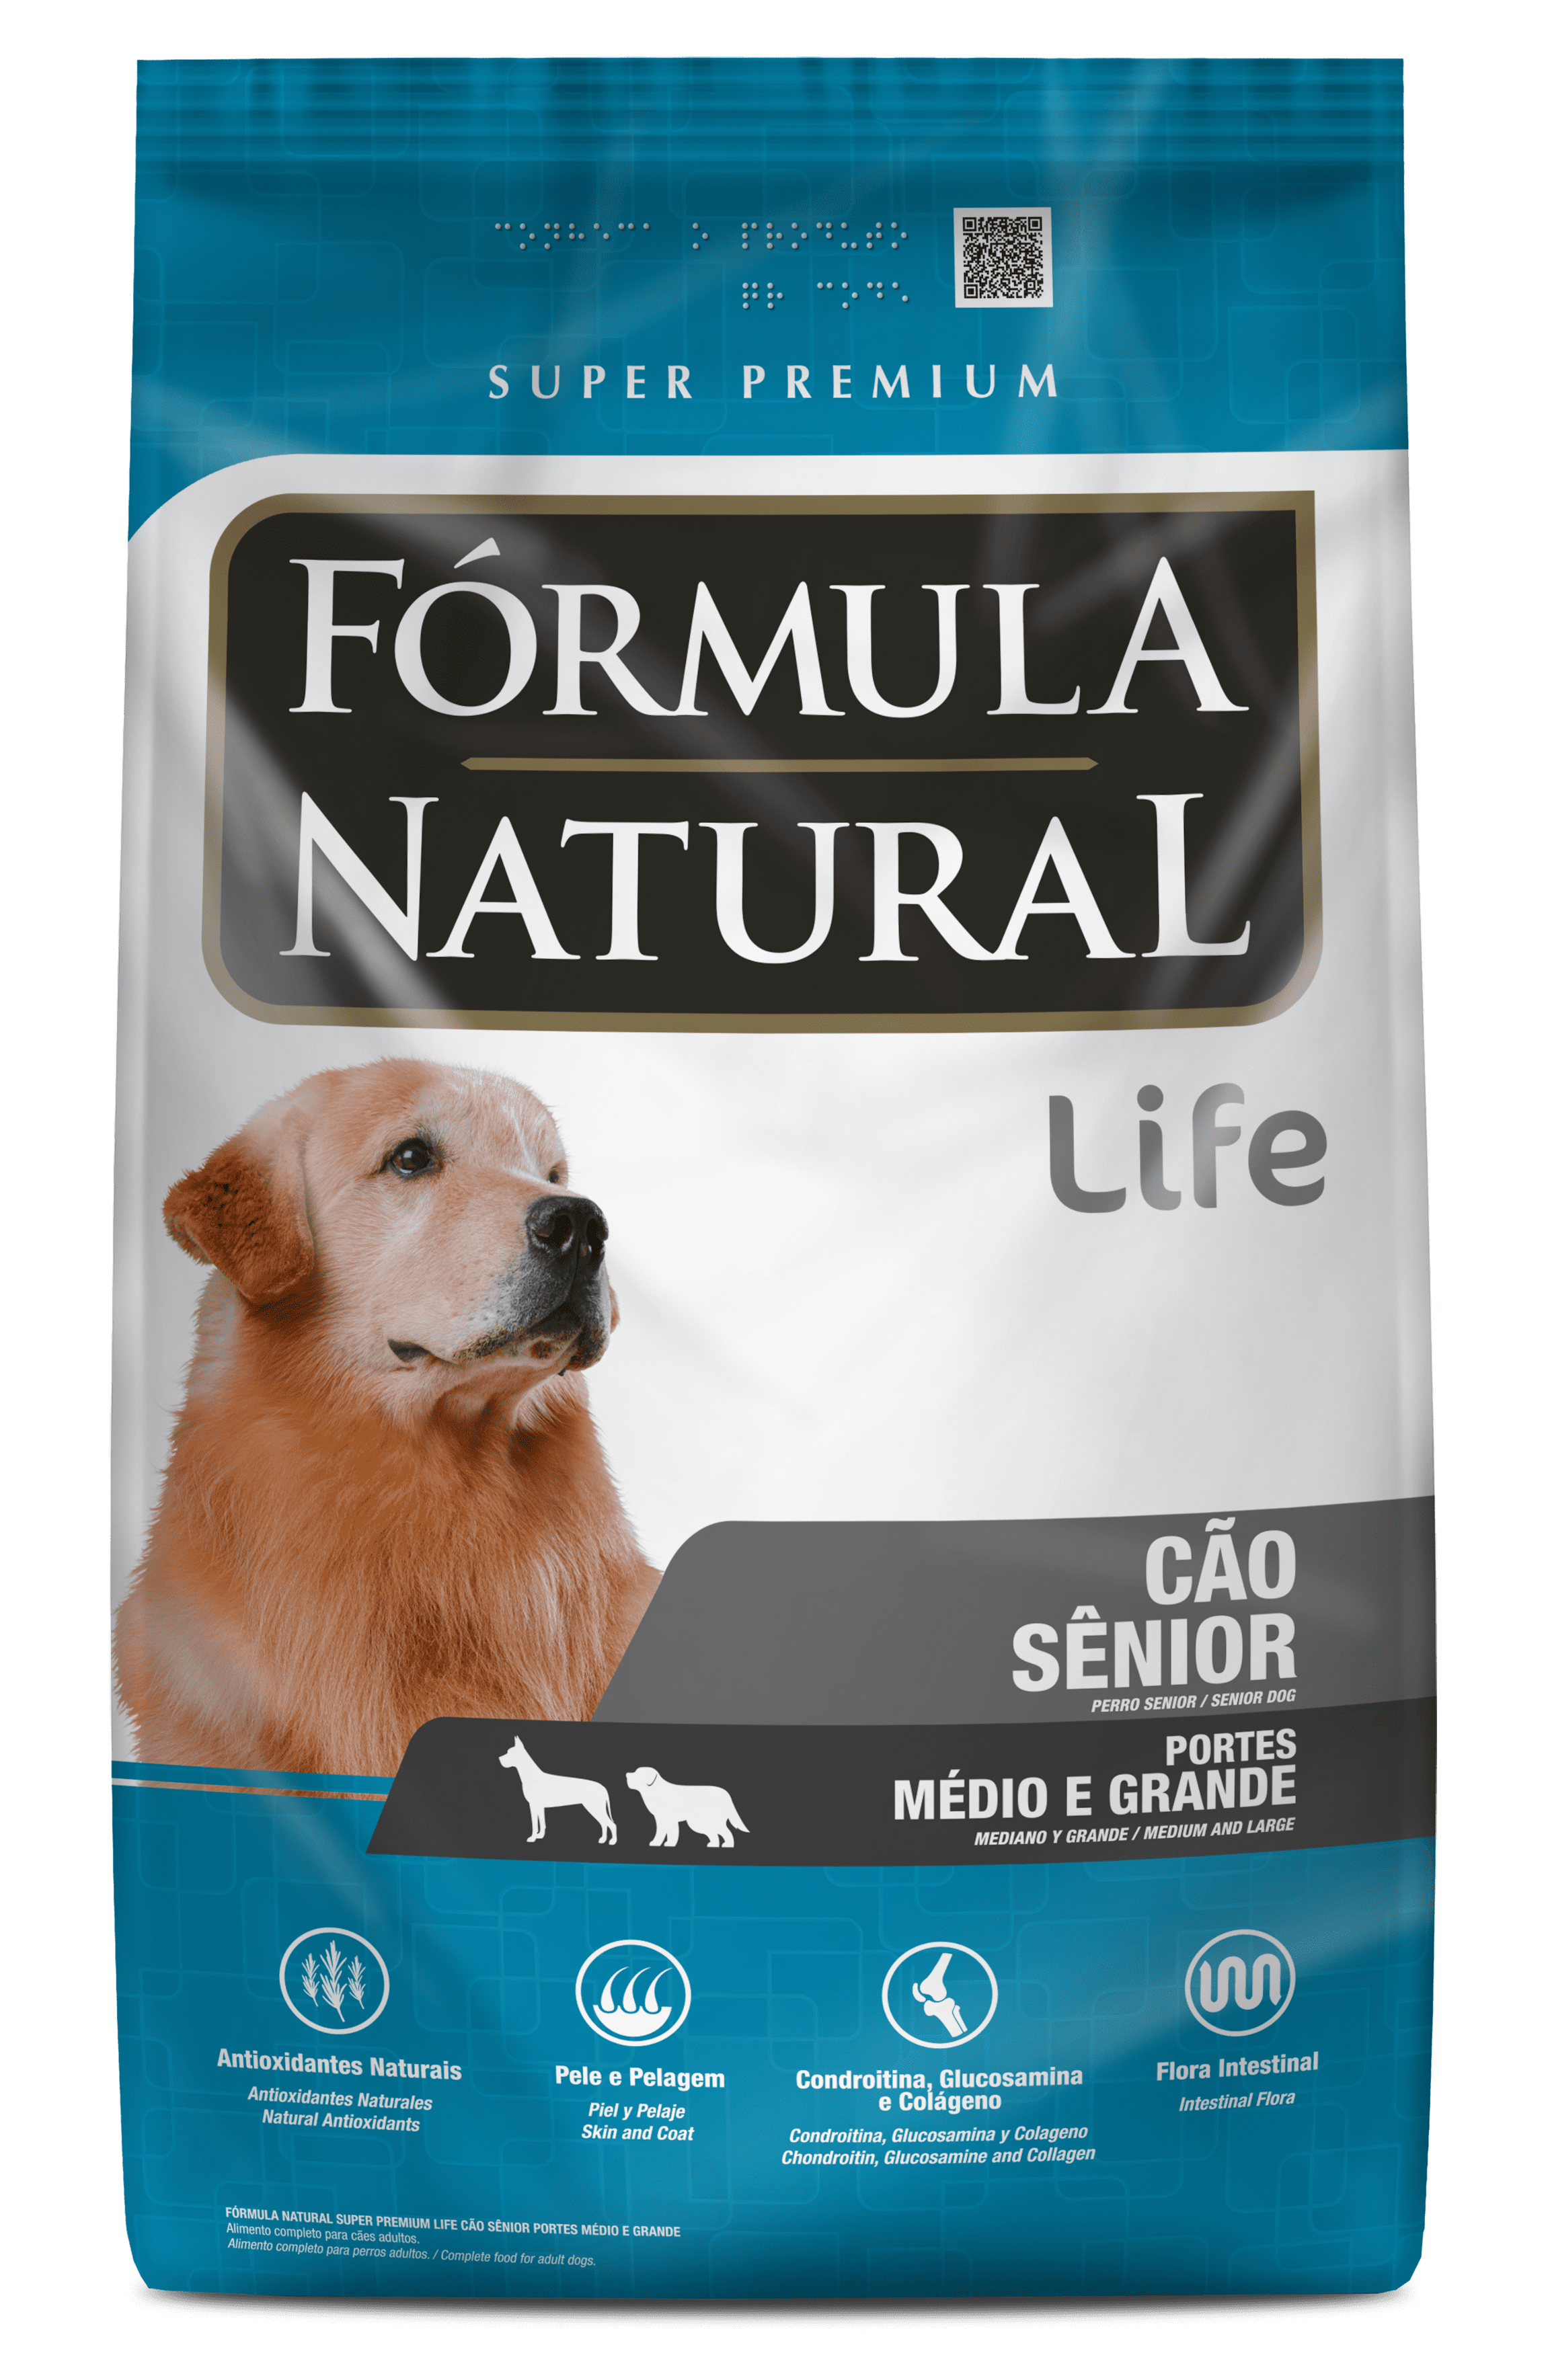 Fórmula Natural Super Premium Life Cães Sênior Portes Médio e Grande